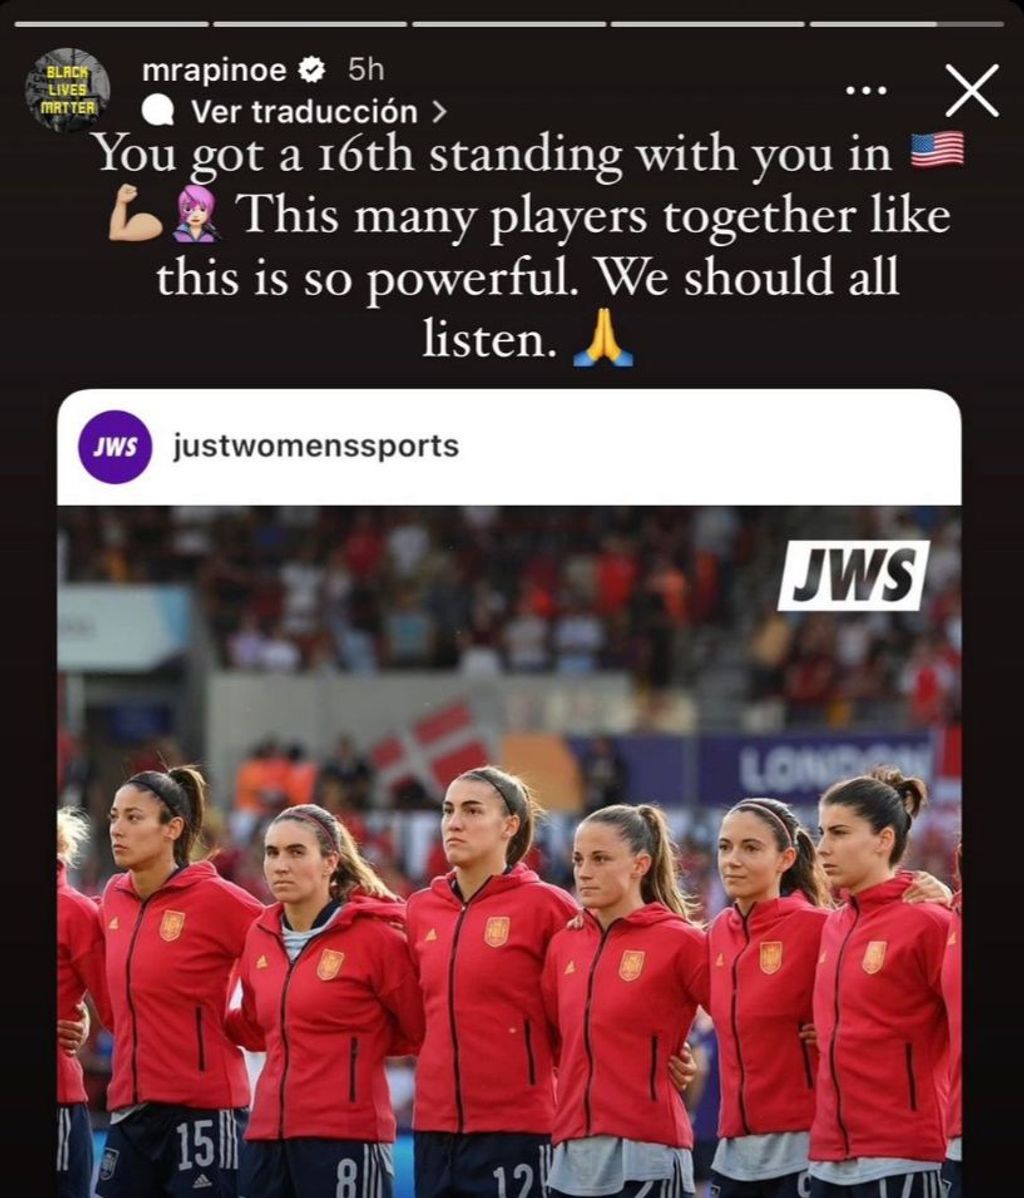 Las palabras de apoyo de Megan Rapinoe a las jugadoras españolas: "Todos deberíamos escucharlas"